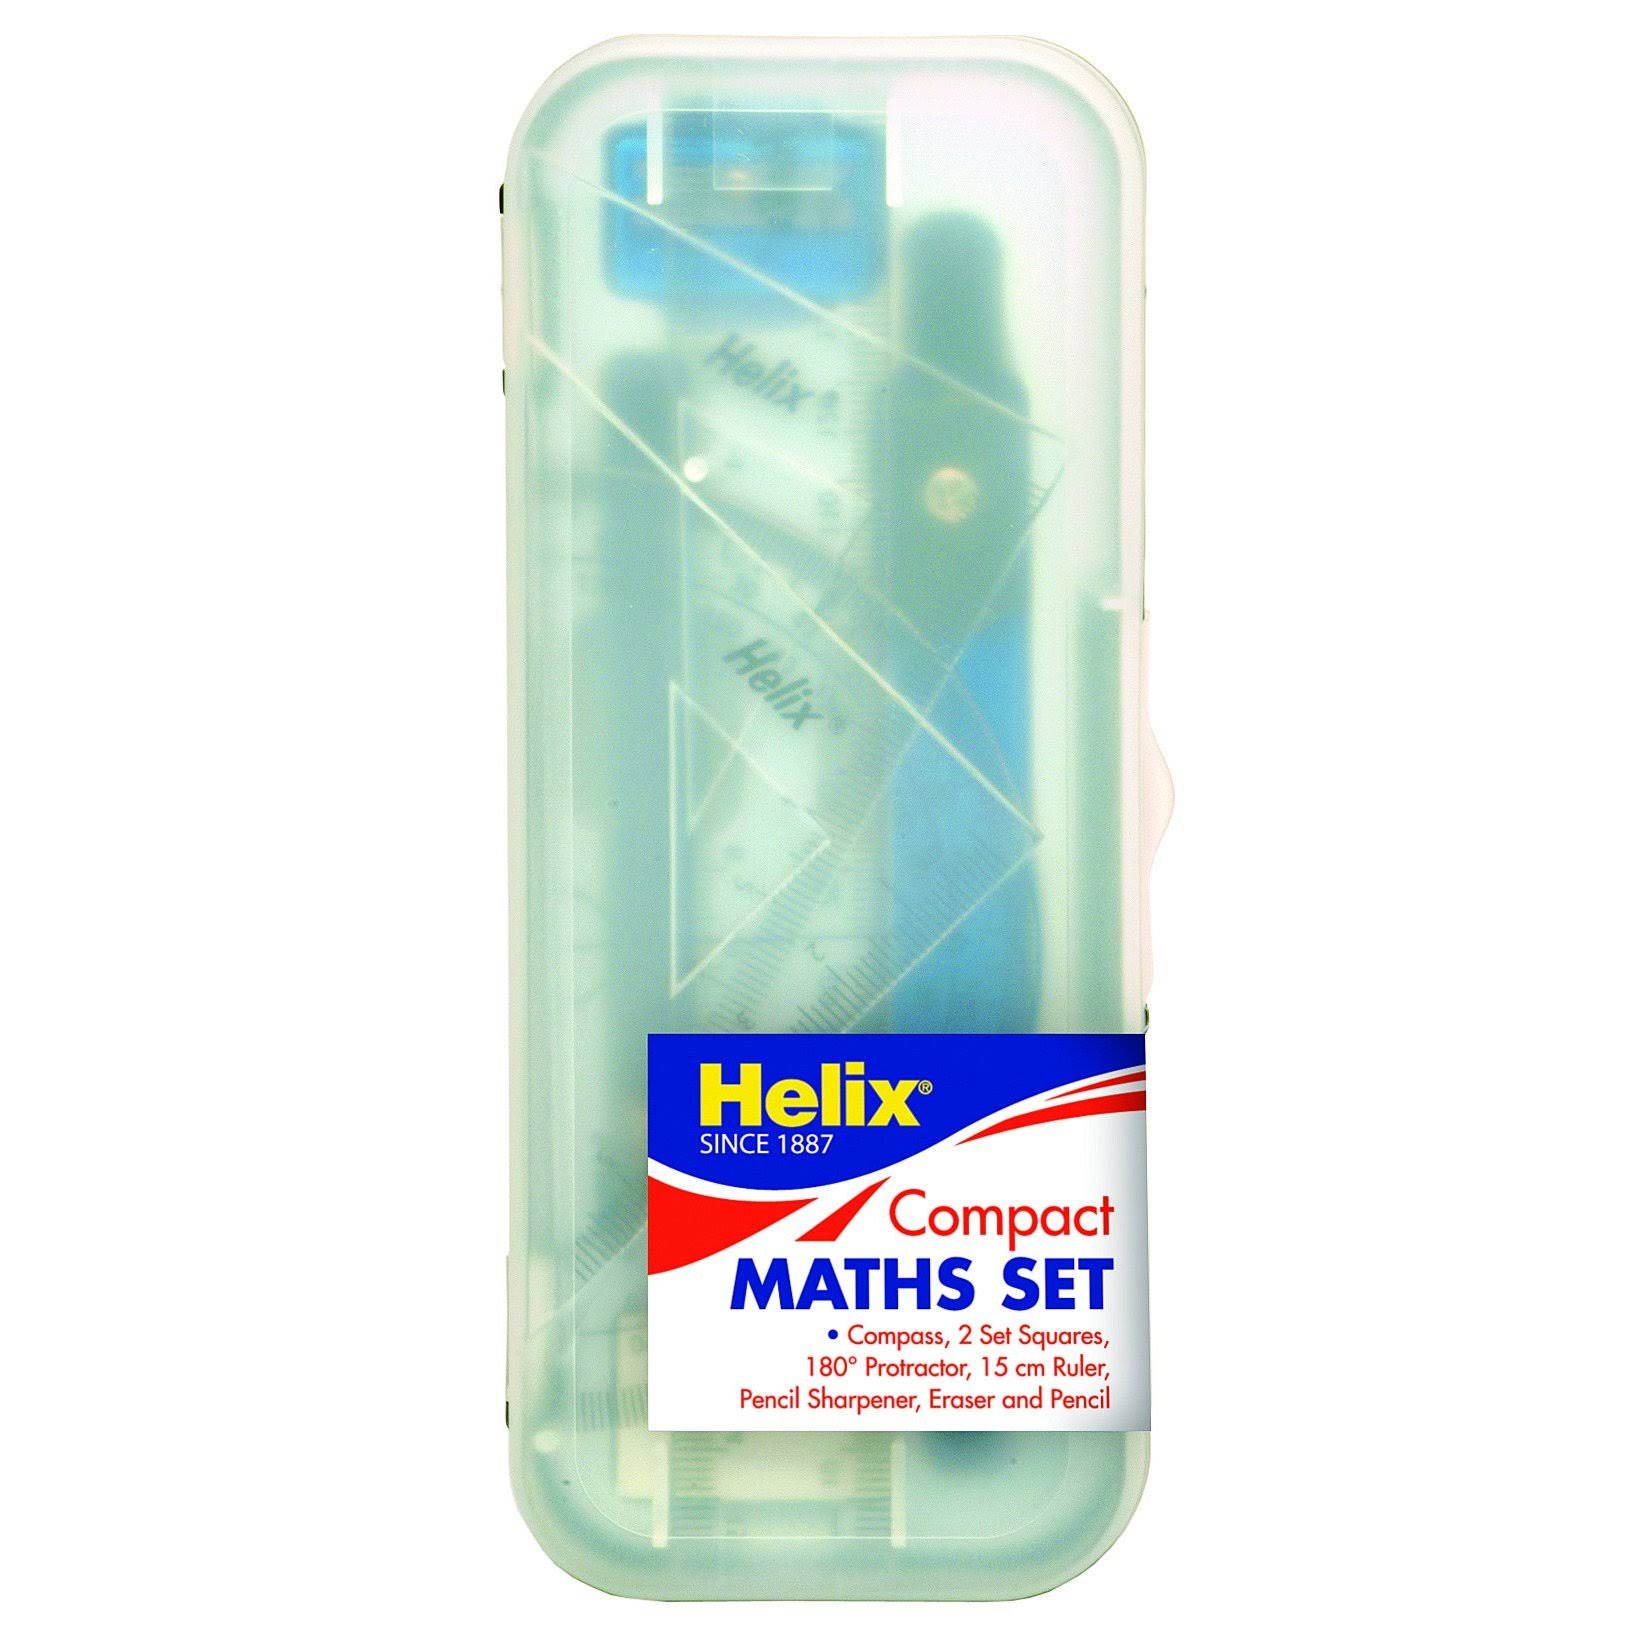 Helix A54 Value Maths Set - Math set